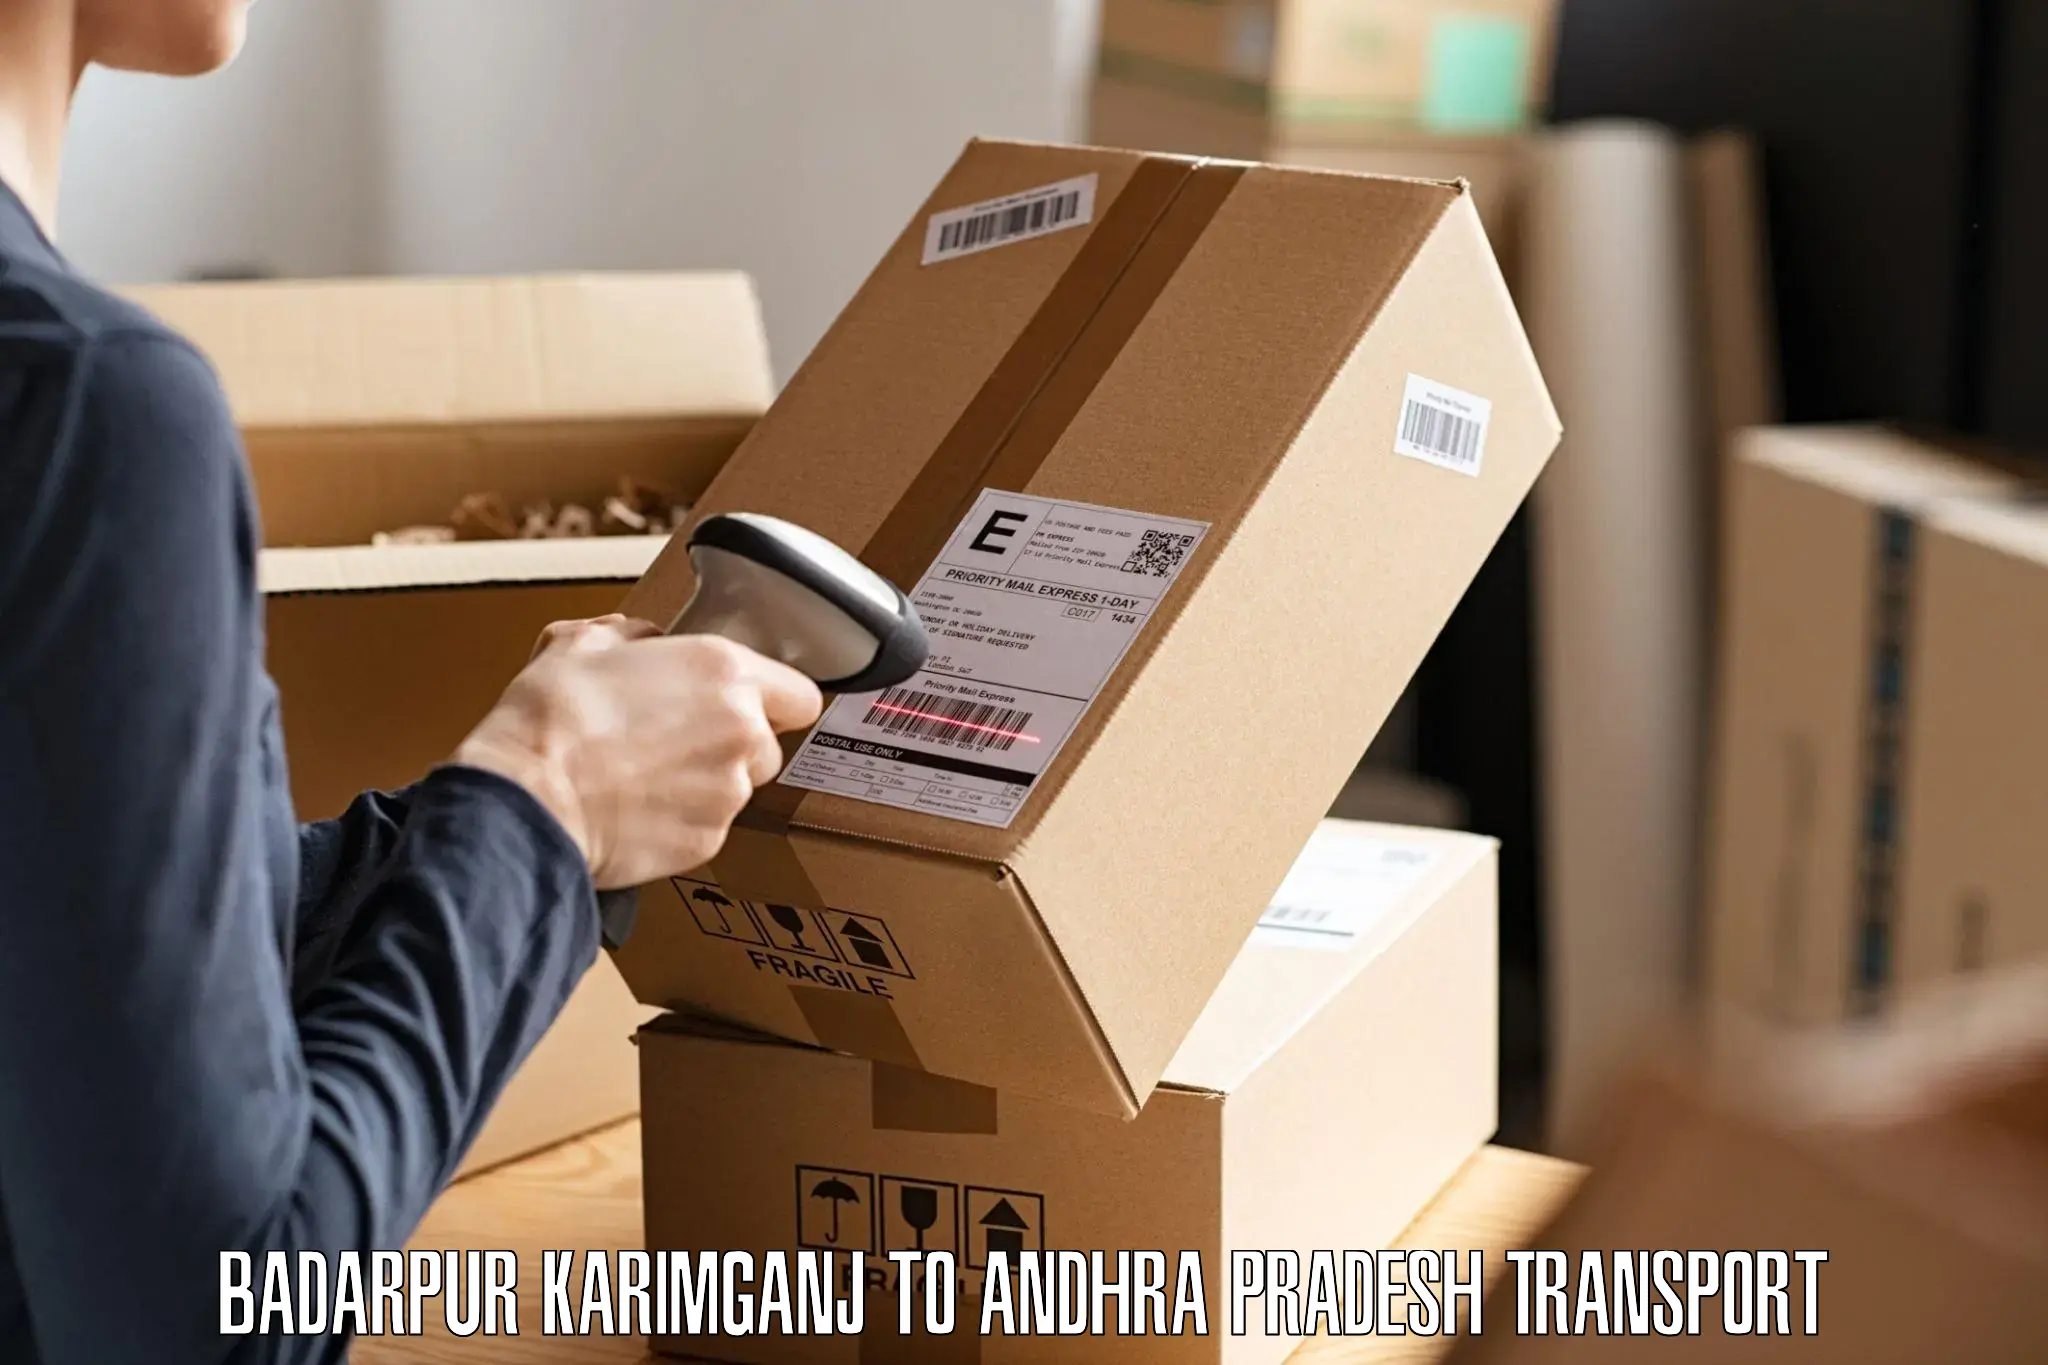 Shipping partner Badarpur Karimganj to Yerragondapalem